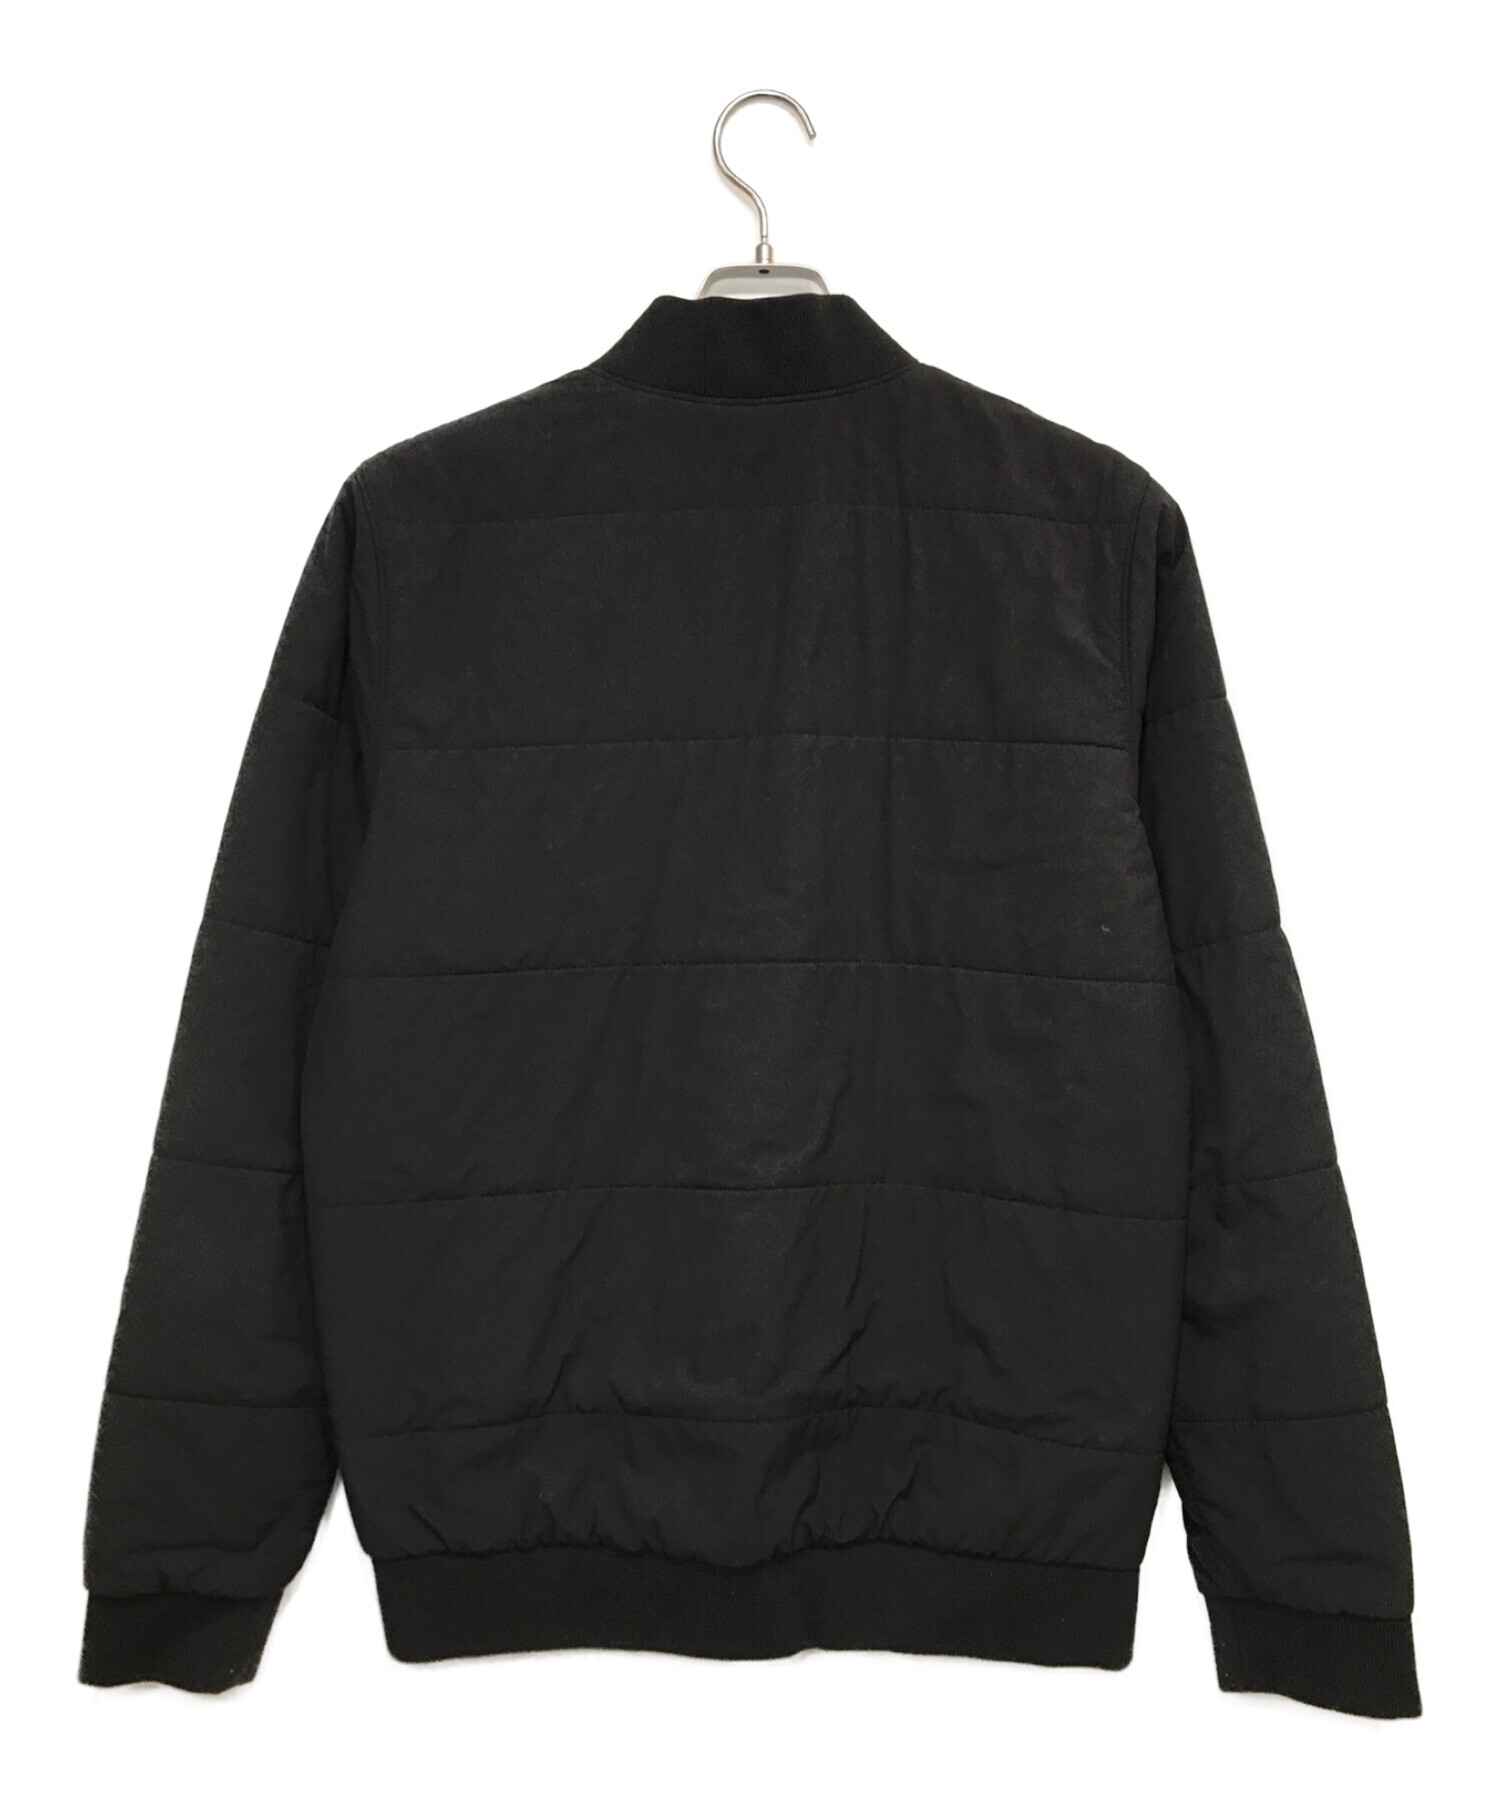 patagonia パタゴニア ゼメル ボマージャケット ブラック サイズMサイズMです